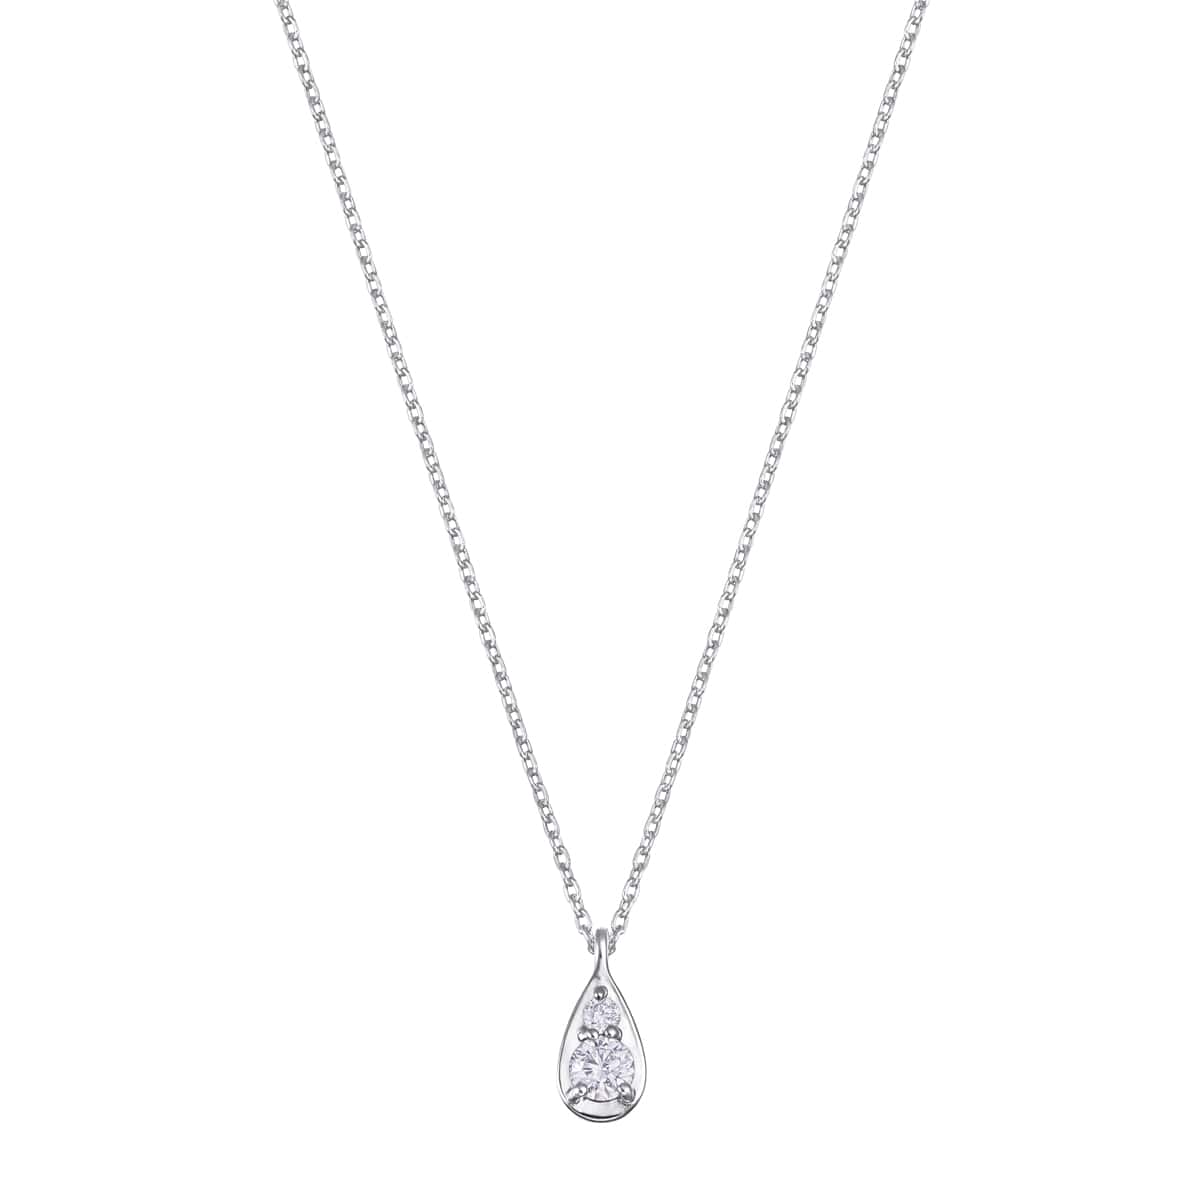 TSUTSUMIオリジナルブランド『Blessed Rain』の光を受けてきらめく『しずく』をダイヤモンドとメタルで表現したミニマルなデザインが美しいプラチナダイヤモンドネックレス